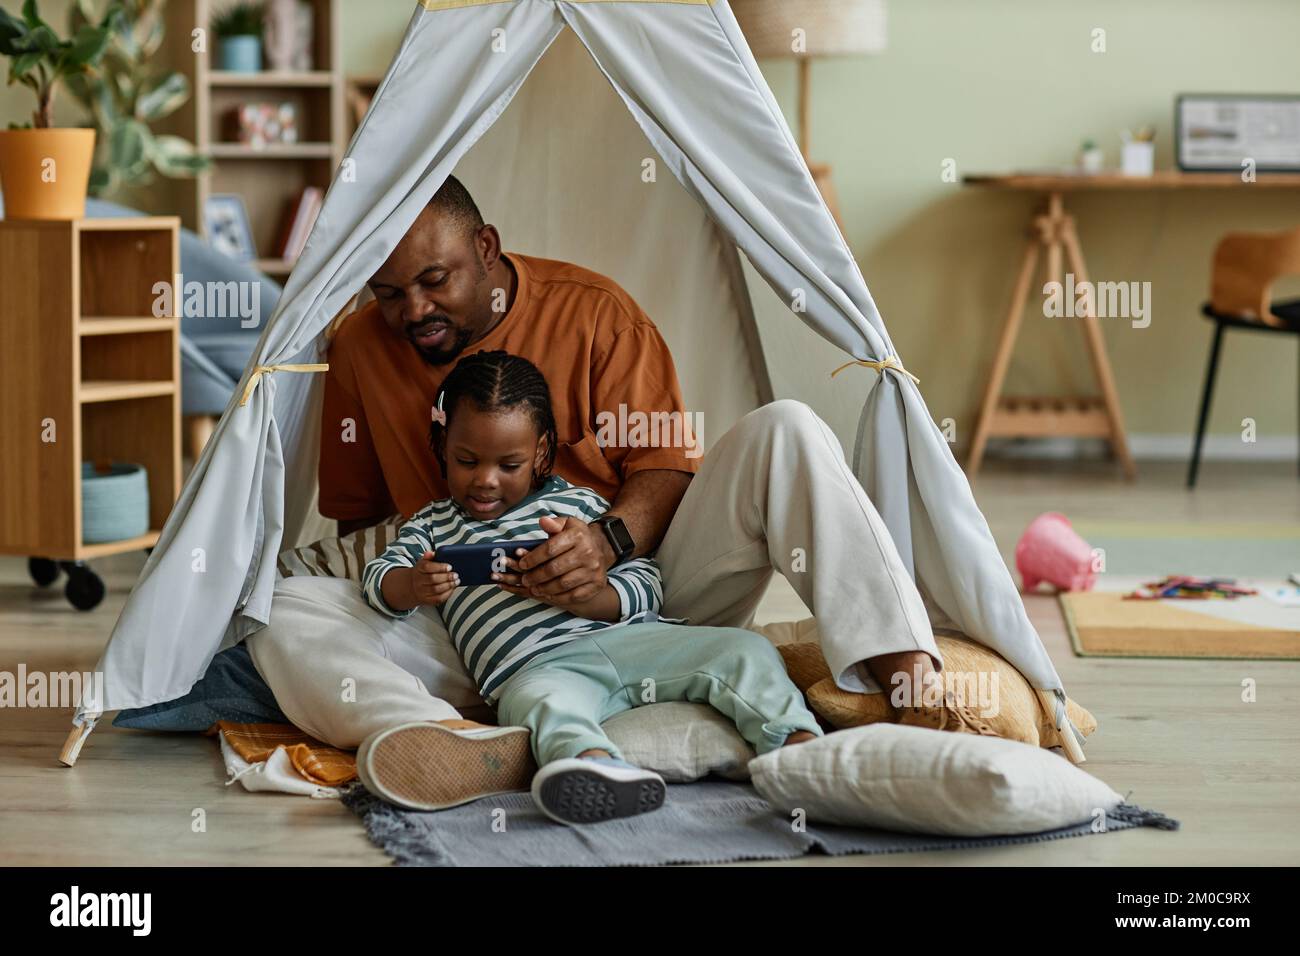 Ritratto completo di amorevole padre nero con bambino utilizzando smartphone insieme in tenda da gioco Foto Stock